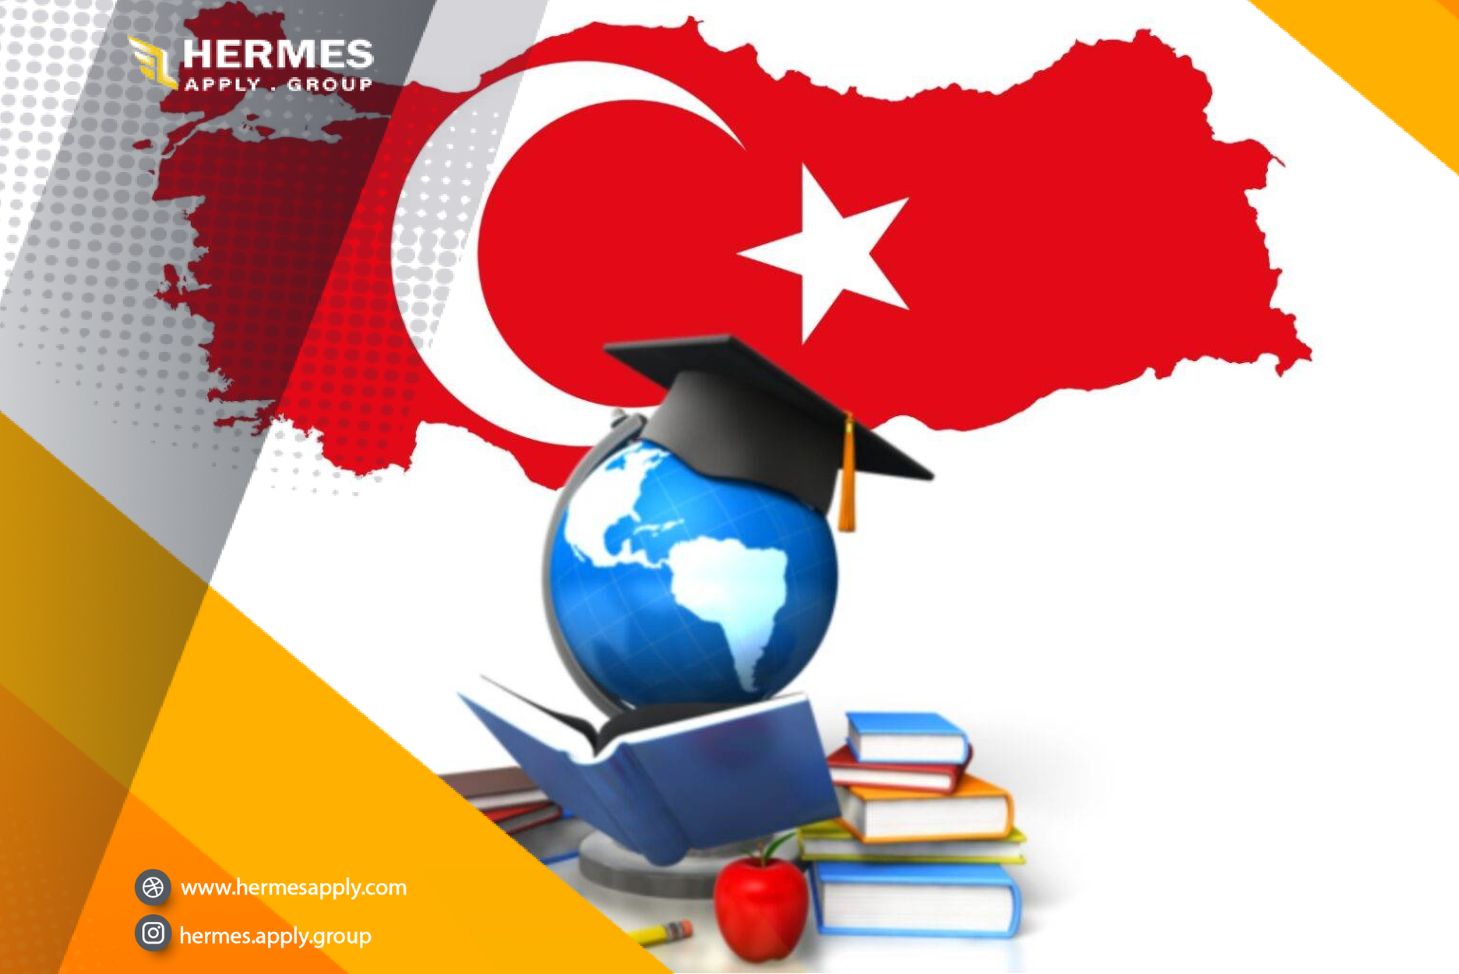 تحصیل در ترکیه با مدرک دیپلم